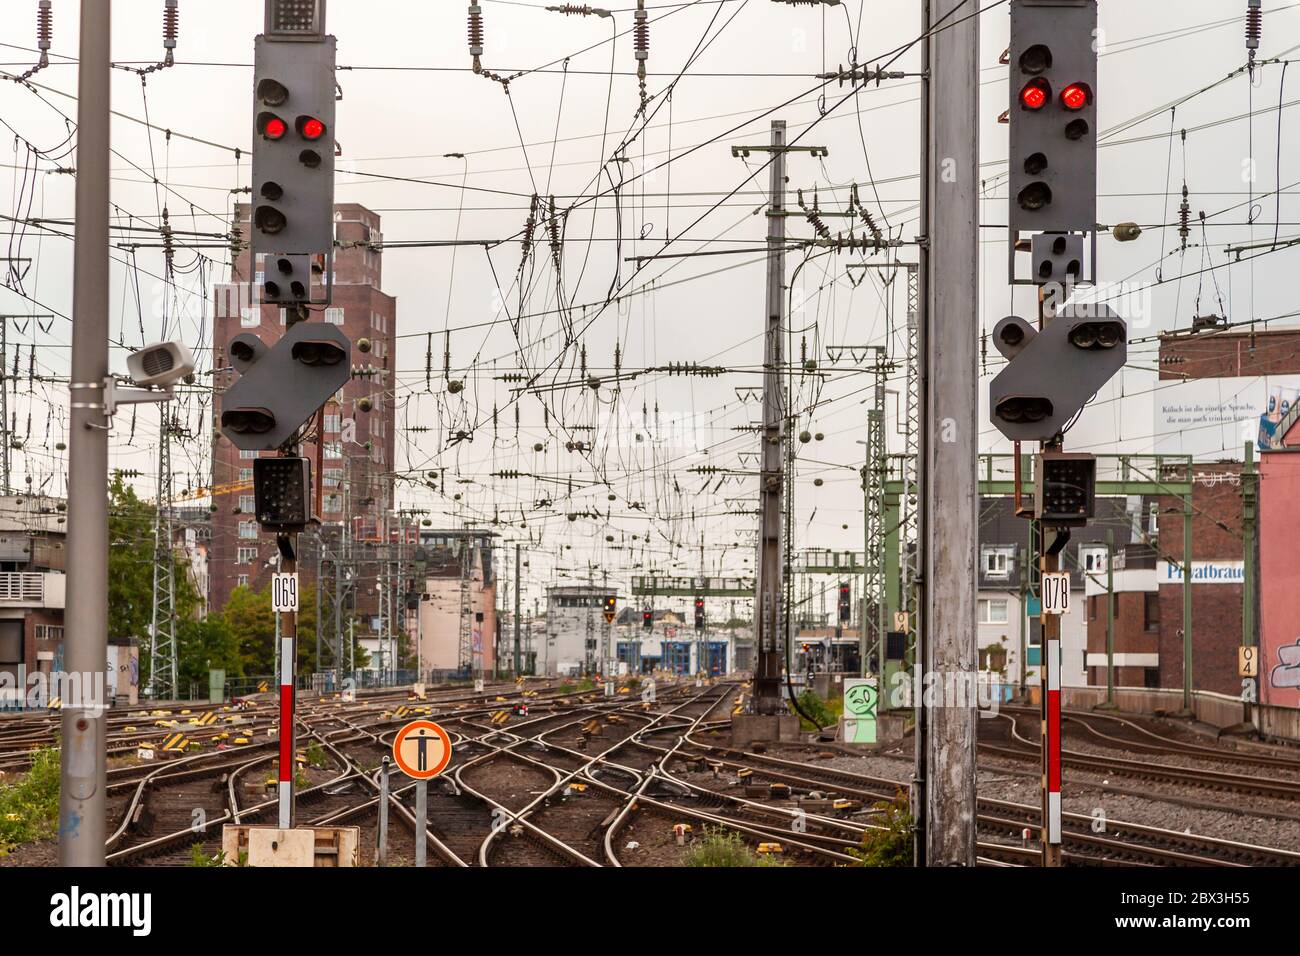 Gleise, Schalter, Signale und Oberleitungen am Kölner Hauptbahnhof. Köln Bahnhof, Deutschland Stockfoto